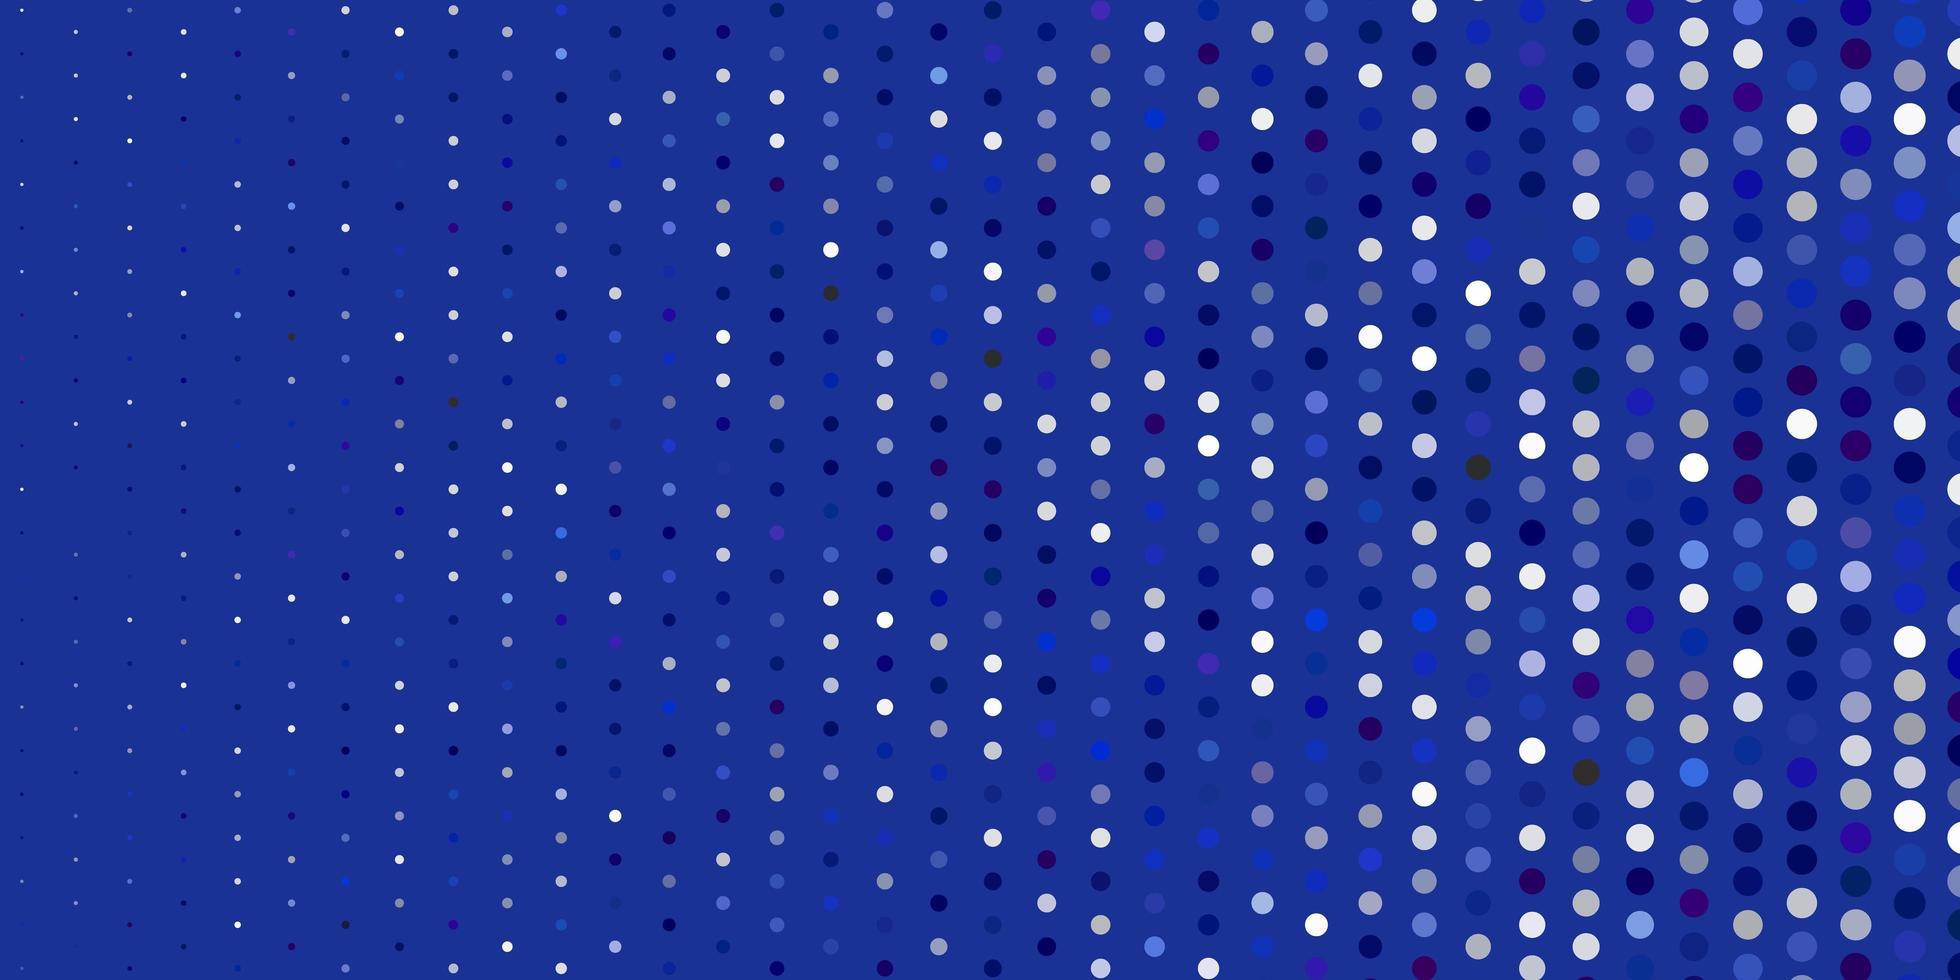 textura de vector azul claro con discos.